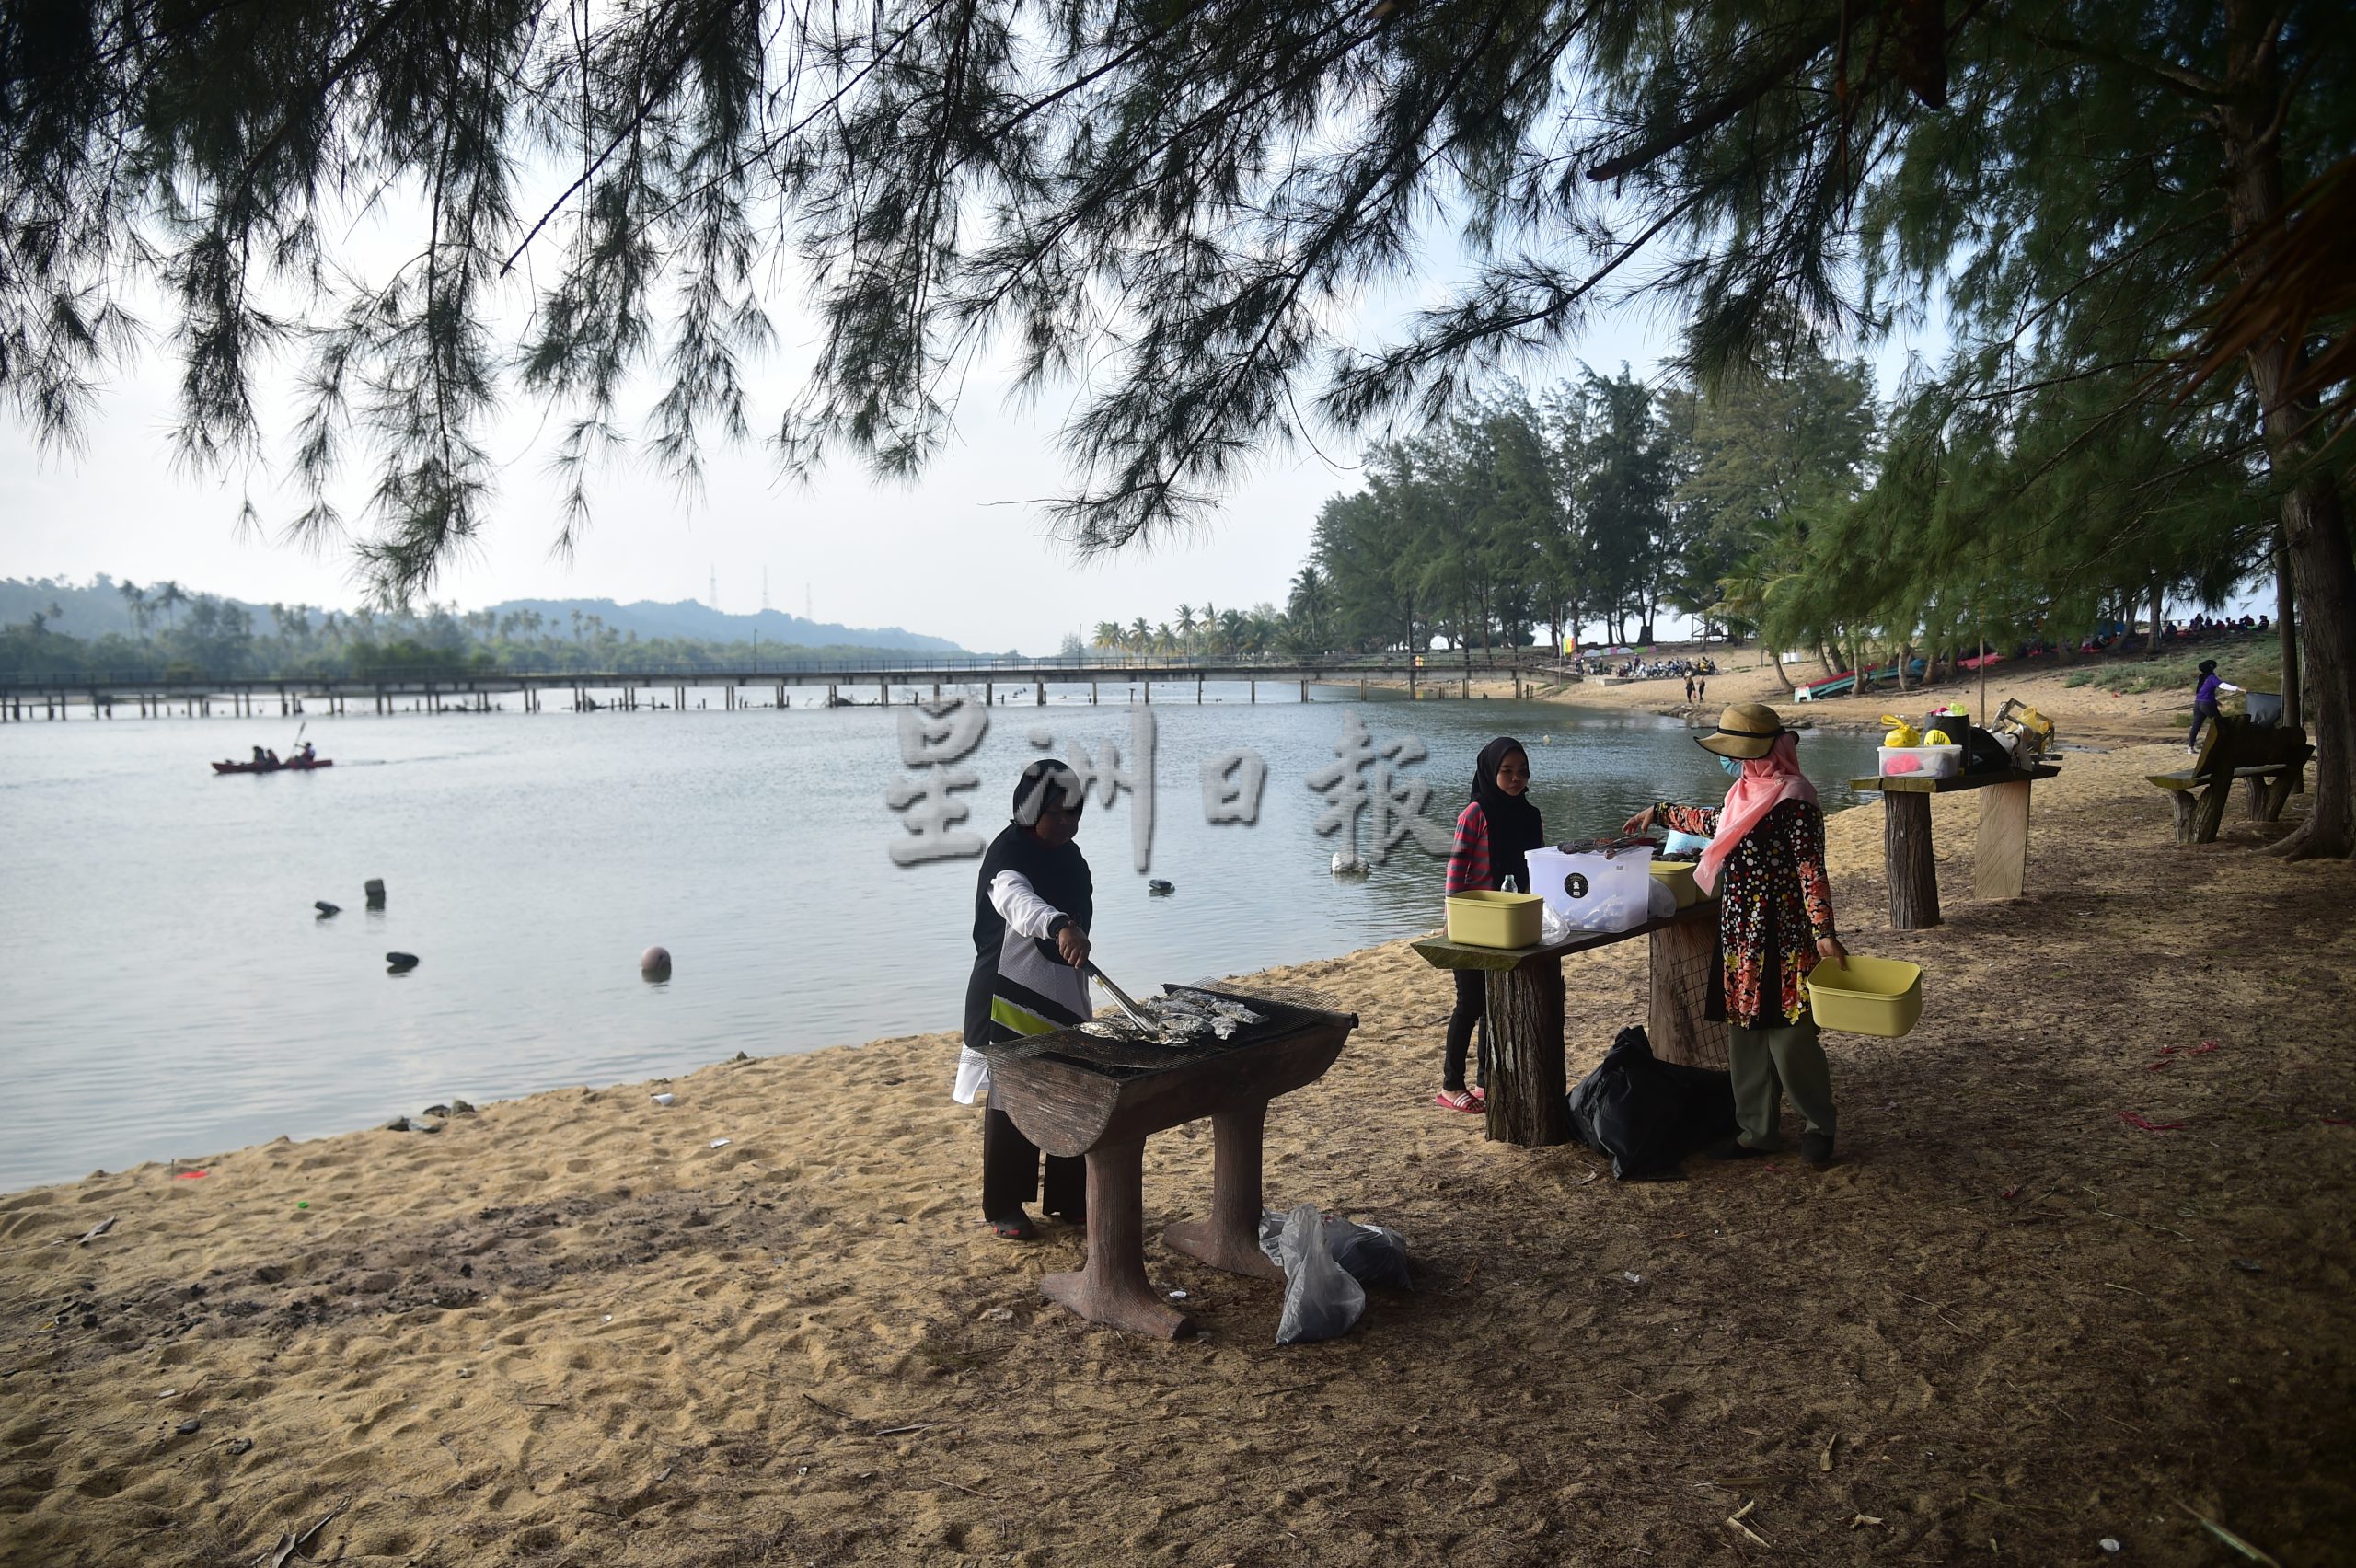 东：登州政府宣布位于墨江的“听风海滩”（Pantai Angin Berbisik）为州内最新的社区旅游景点，适合一家大小进行休闲观光活动。